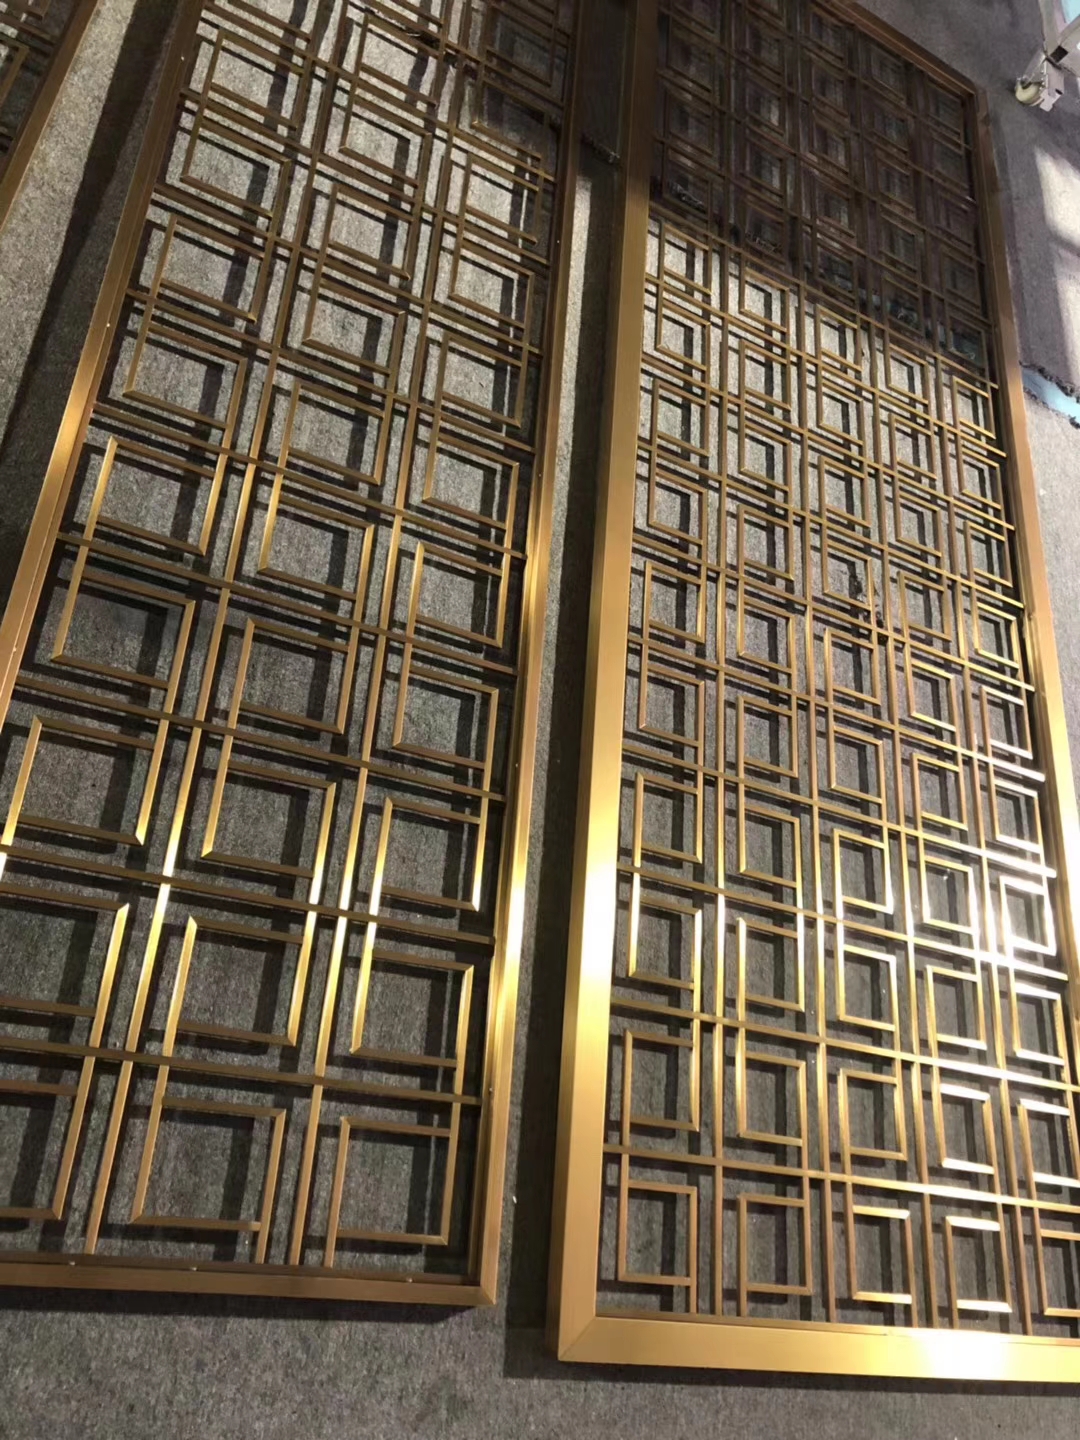 天津酒店装饰专用不锈钢屏风  不锈钢花格  客厅屏风隔断